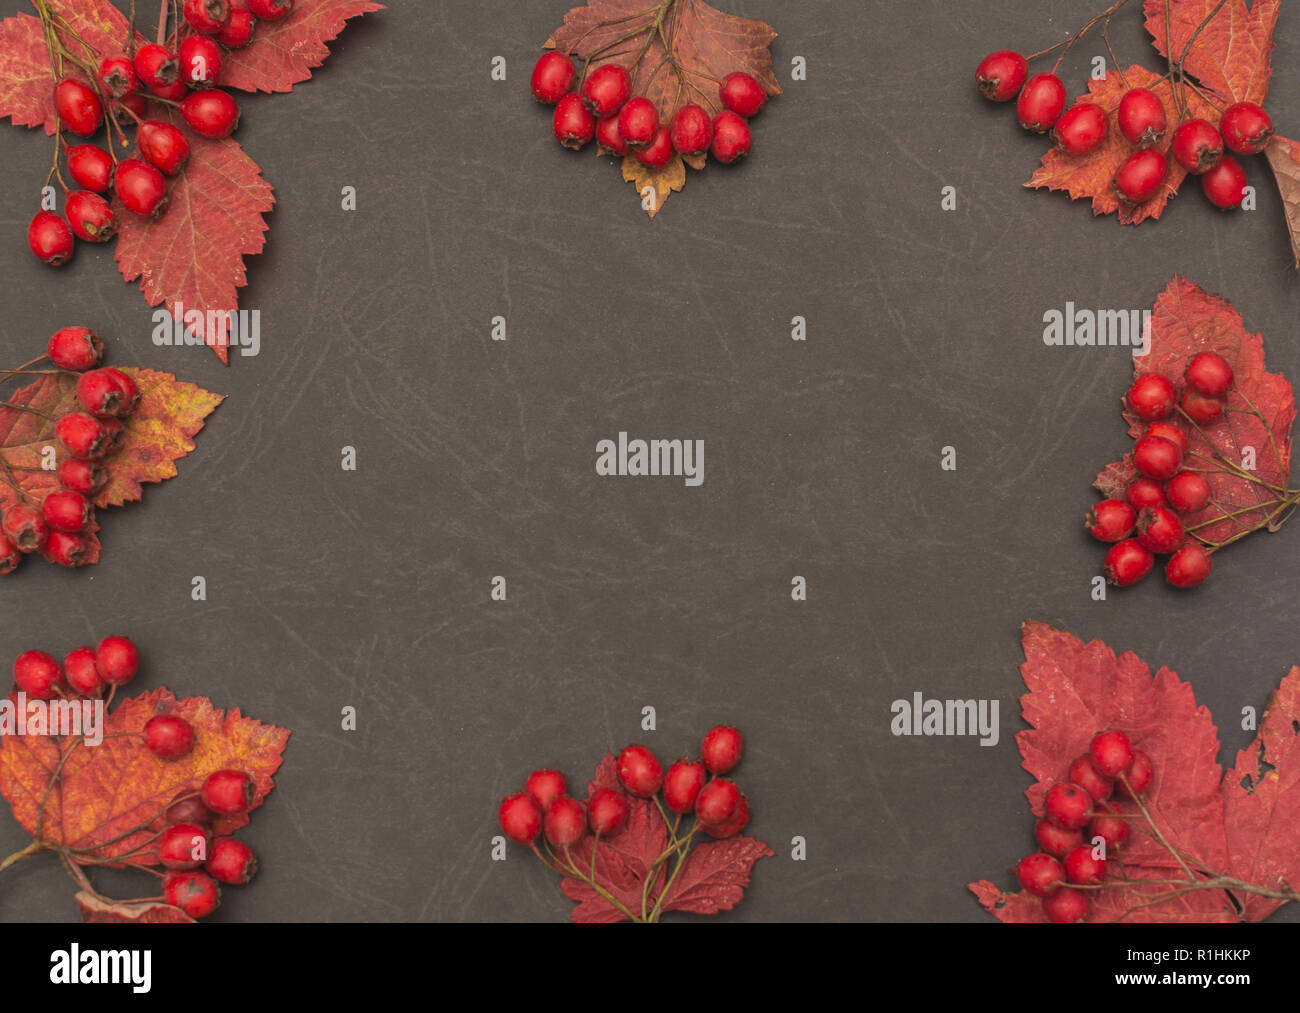 Herbst Hintergrund mit fallen lassen und Früchte auf schwarzem Hintergrund Stockfoto